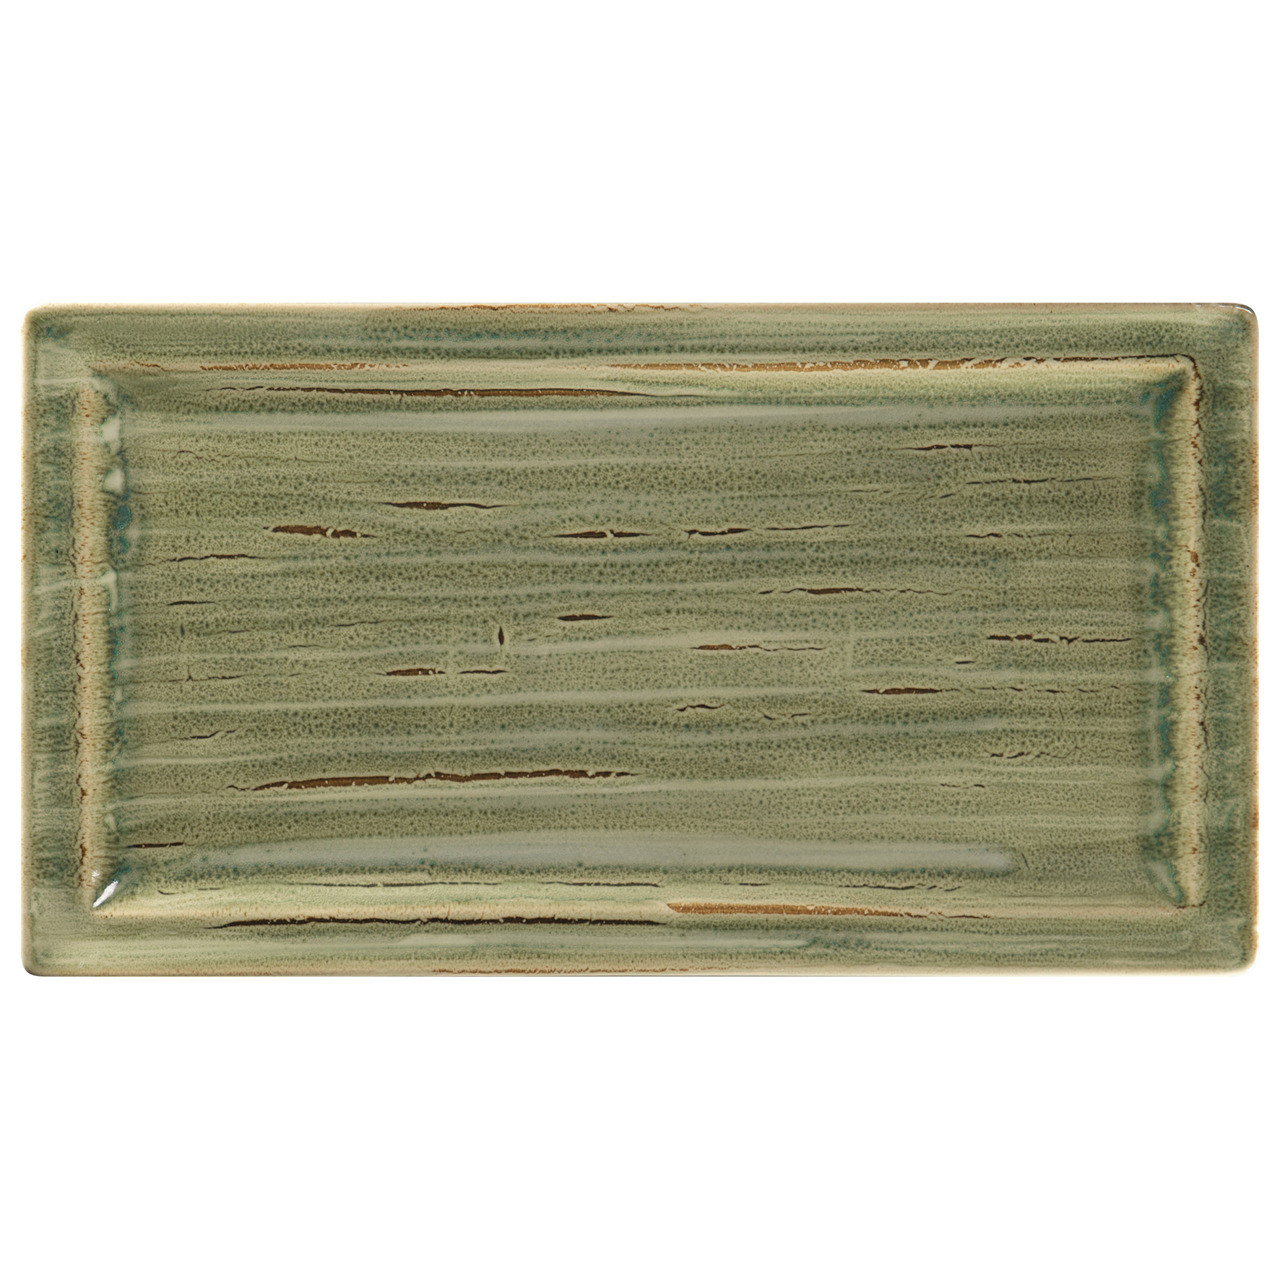 Spot, Teller flach rechteckig 385 x 210 mm emerald green